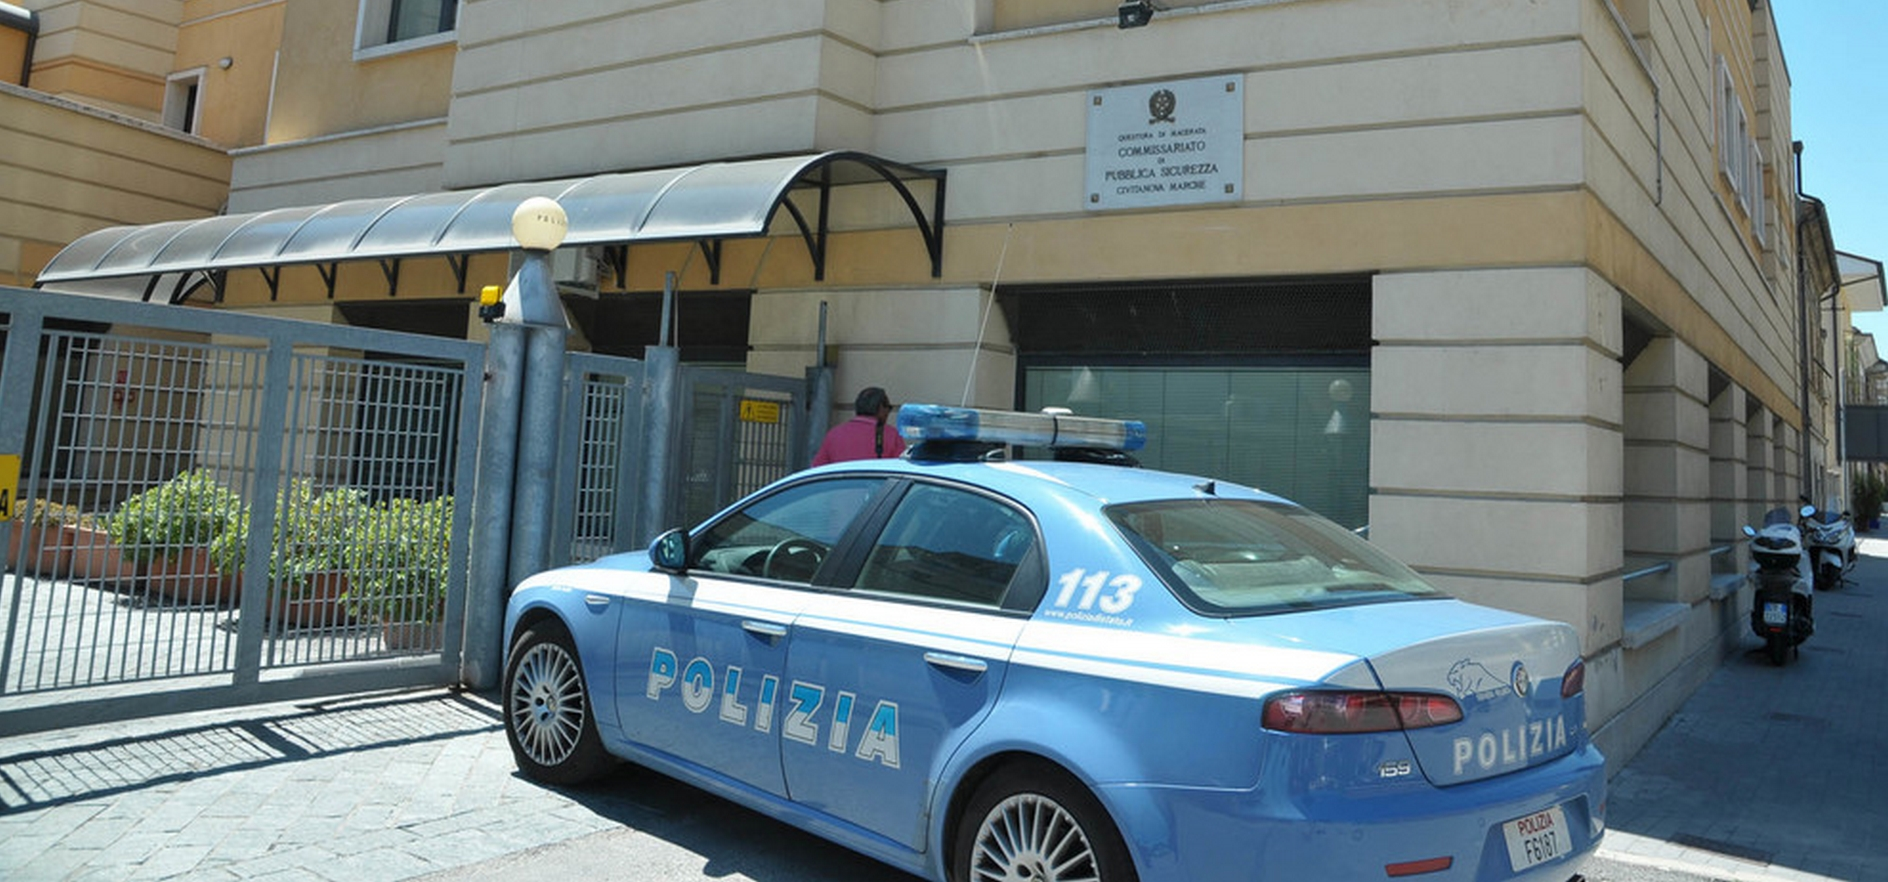 Polizia arresta l’aggressore del titolare di nigth a Civitanova